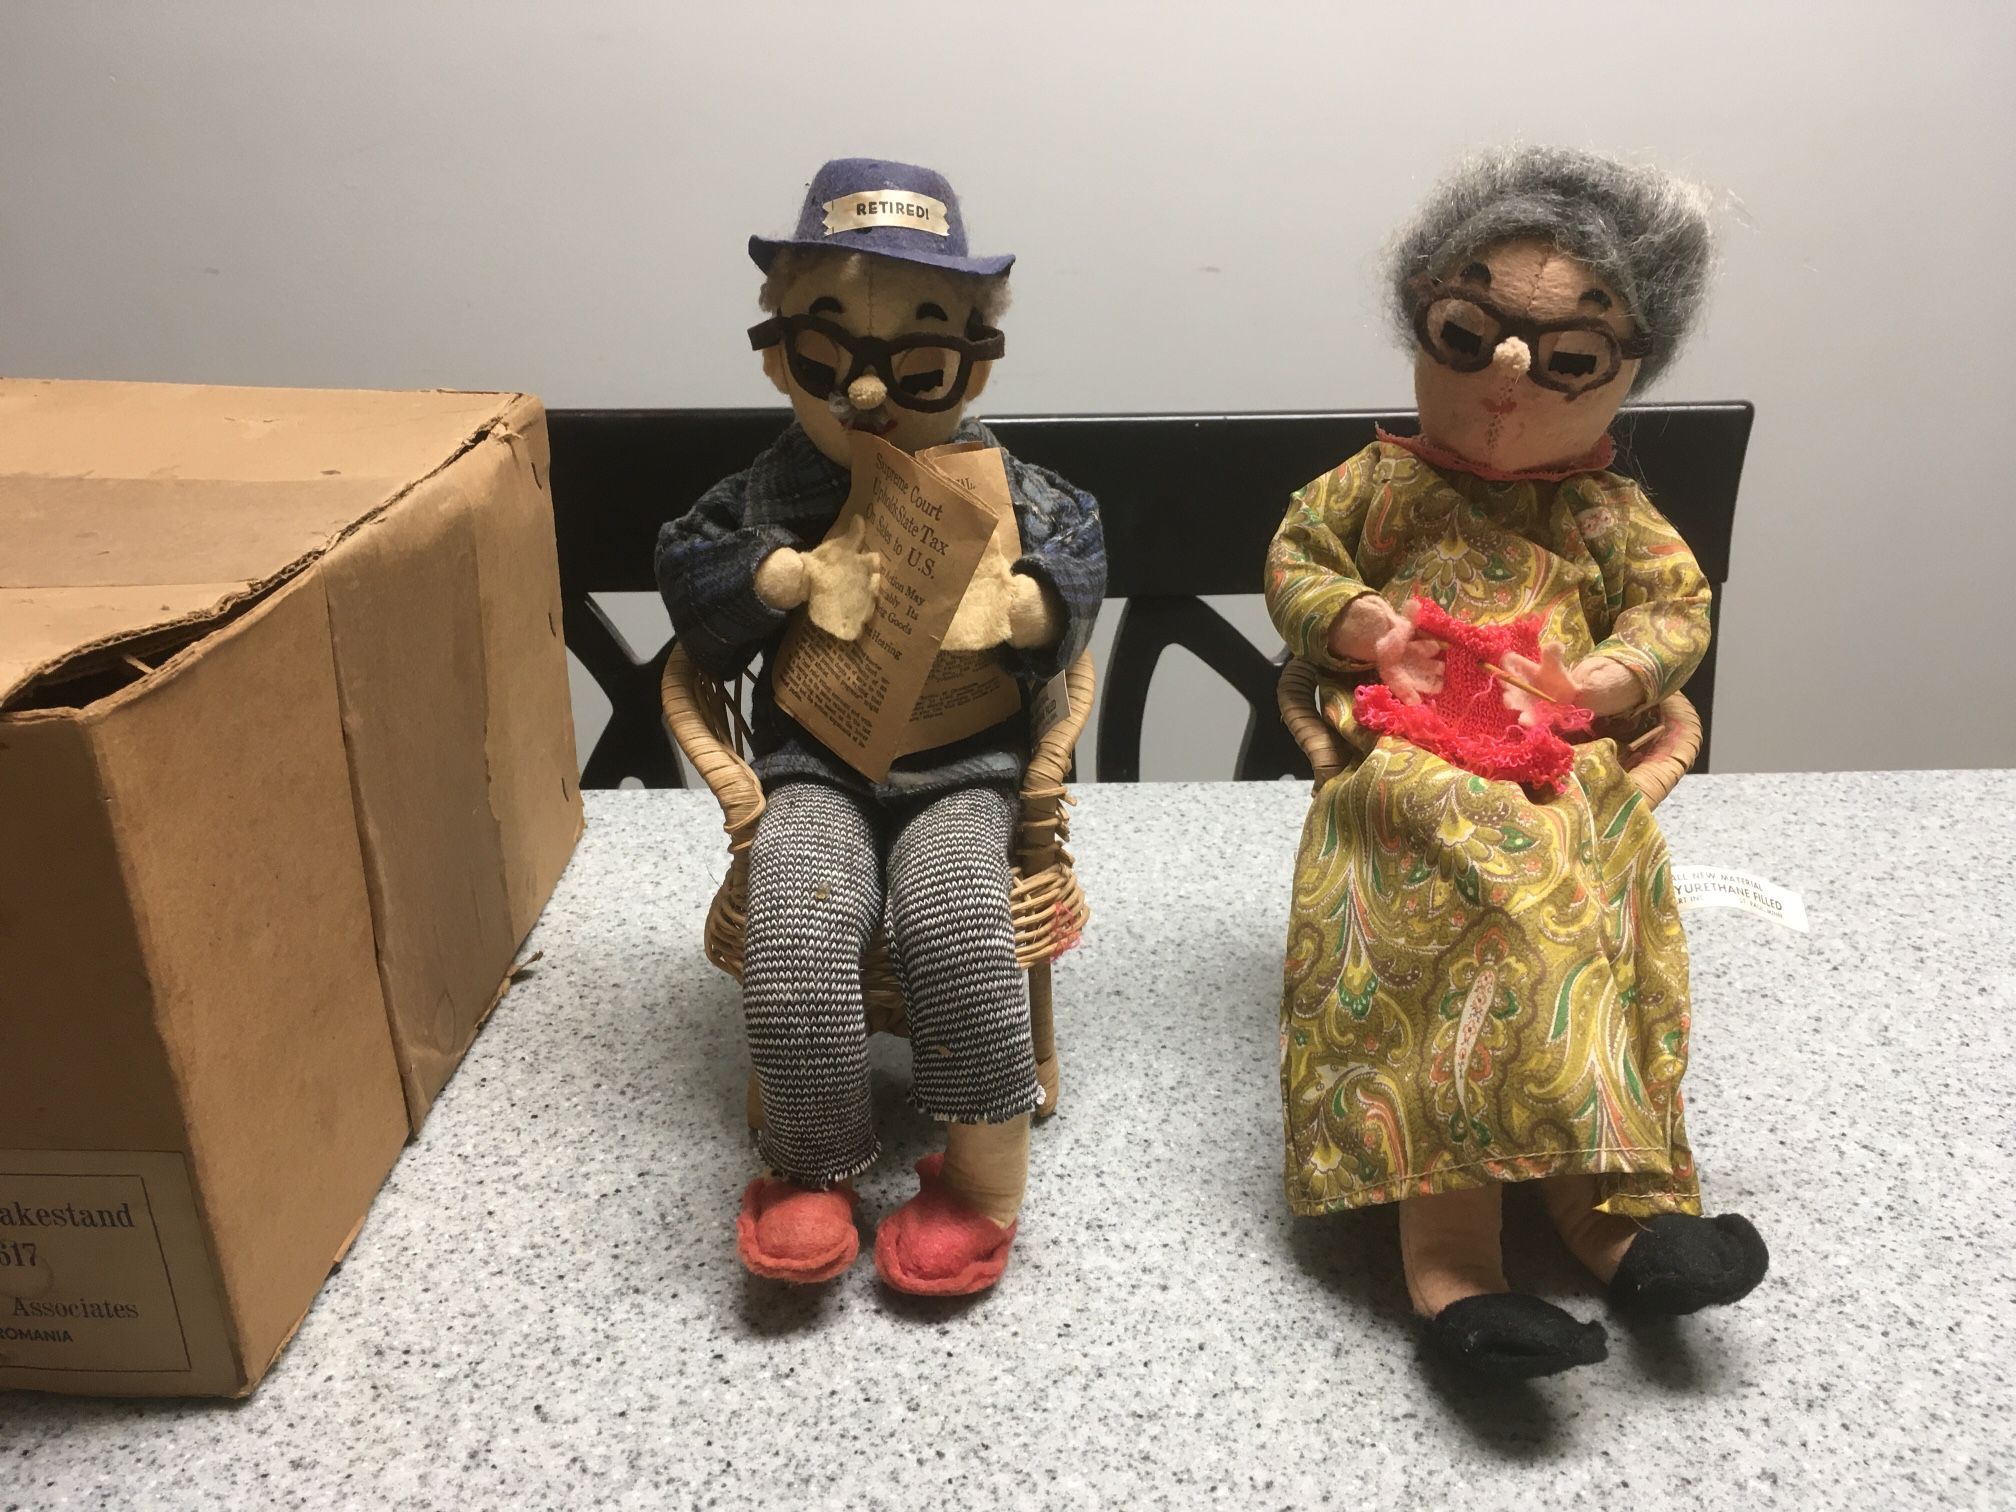 Vintage Mom & Dad Novelty Retired Dolls 